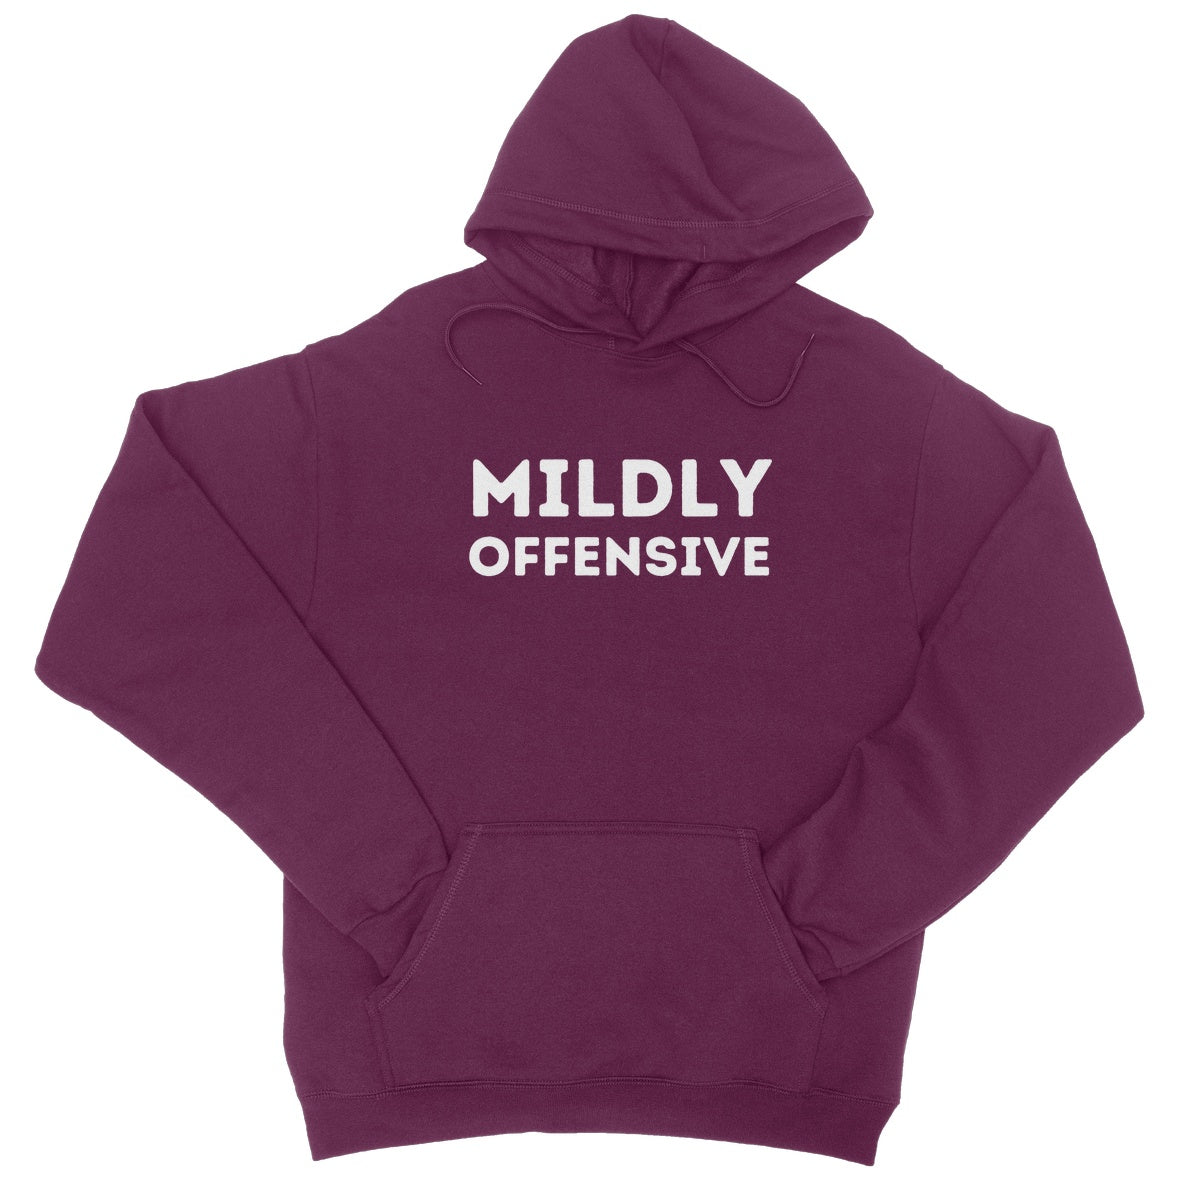 mildly offensive hoodie purple